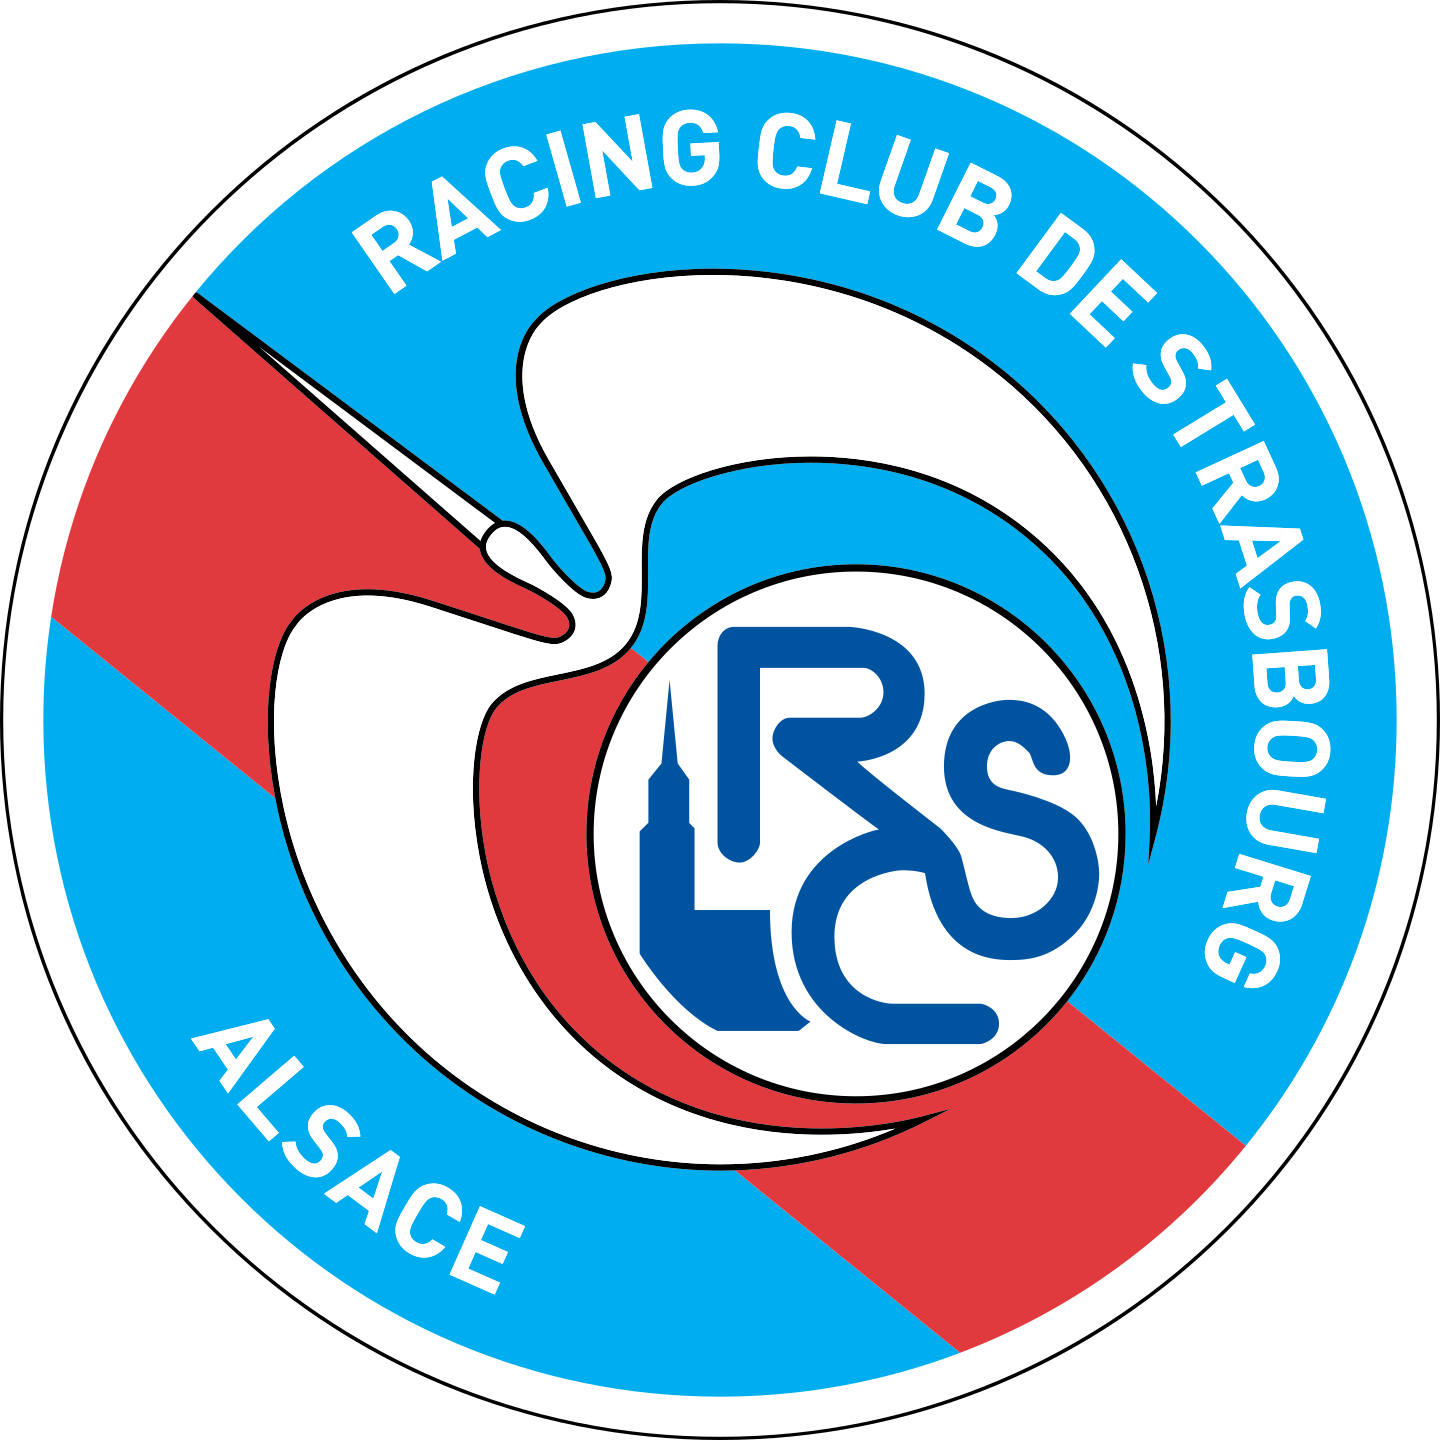 rc strasbourg logo 2 - RC Strasbourg Logo